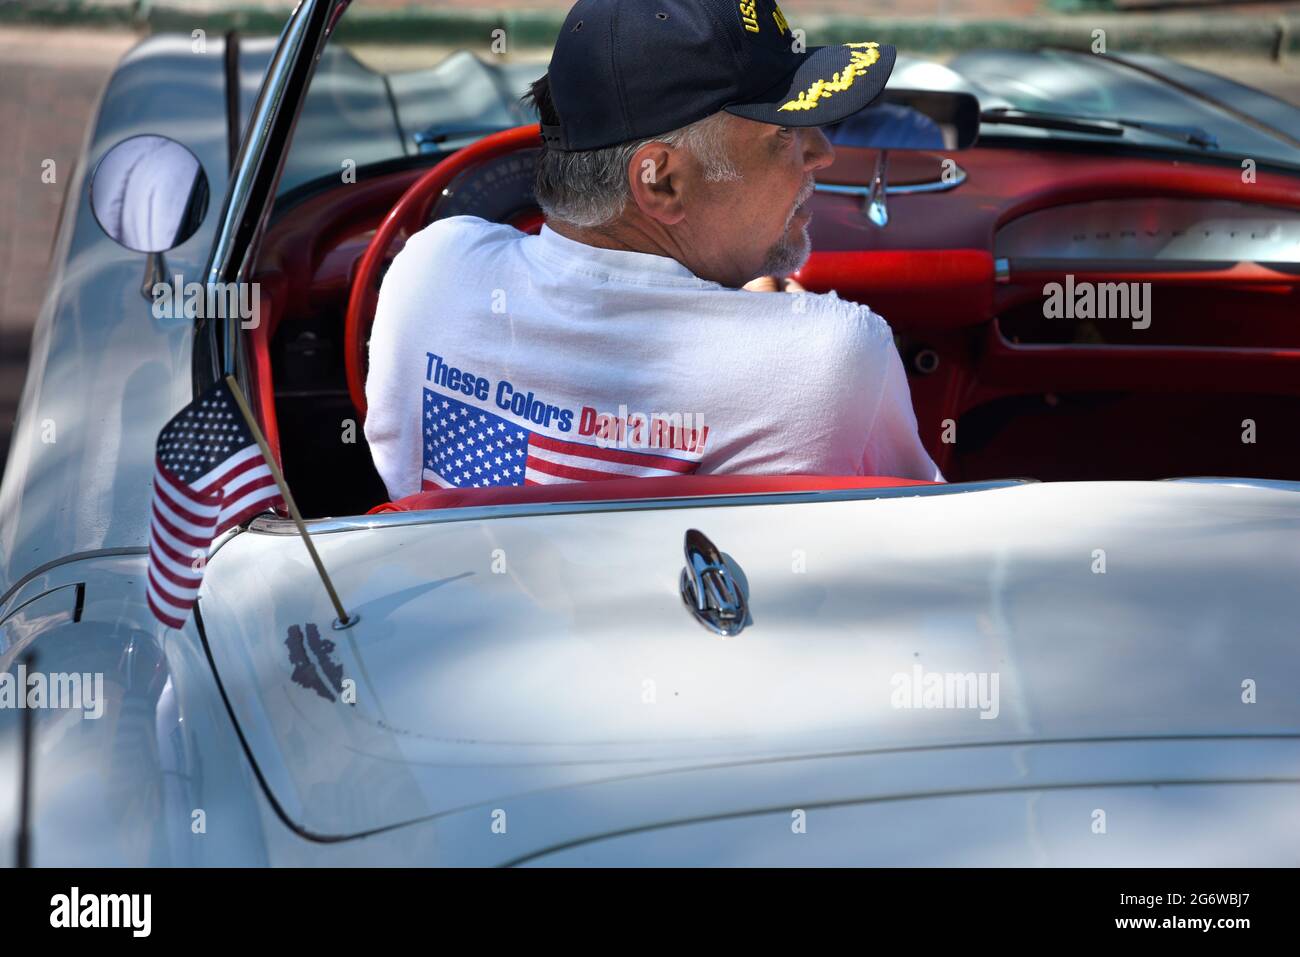 Der amerikanische Besitzer eines Corvette Cabriolets aus dem Jahr 1959 trägt ein patriotisches T-Shirt auf einer Oldtimer-Show am 4. Juli in Santa Fe, New Mexico. Stockfoto